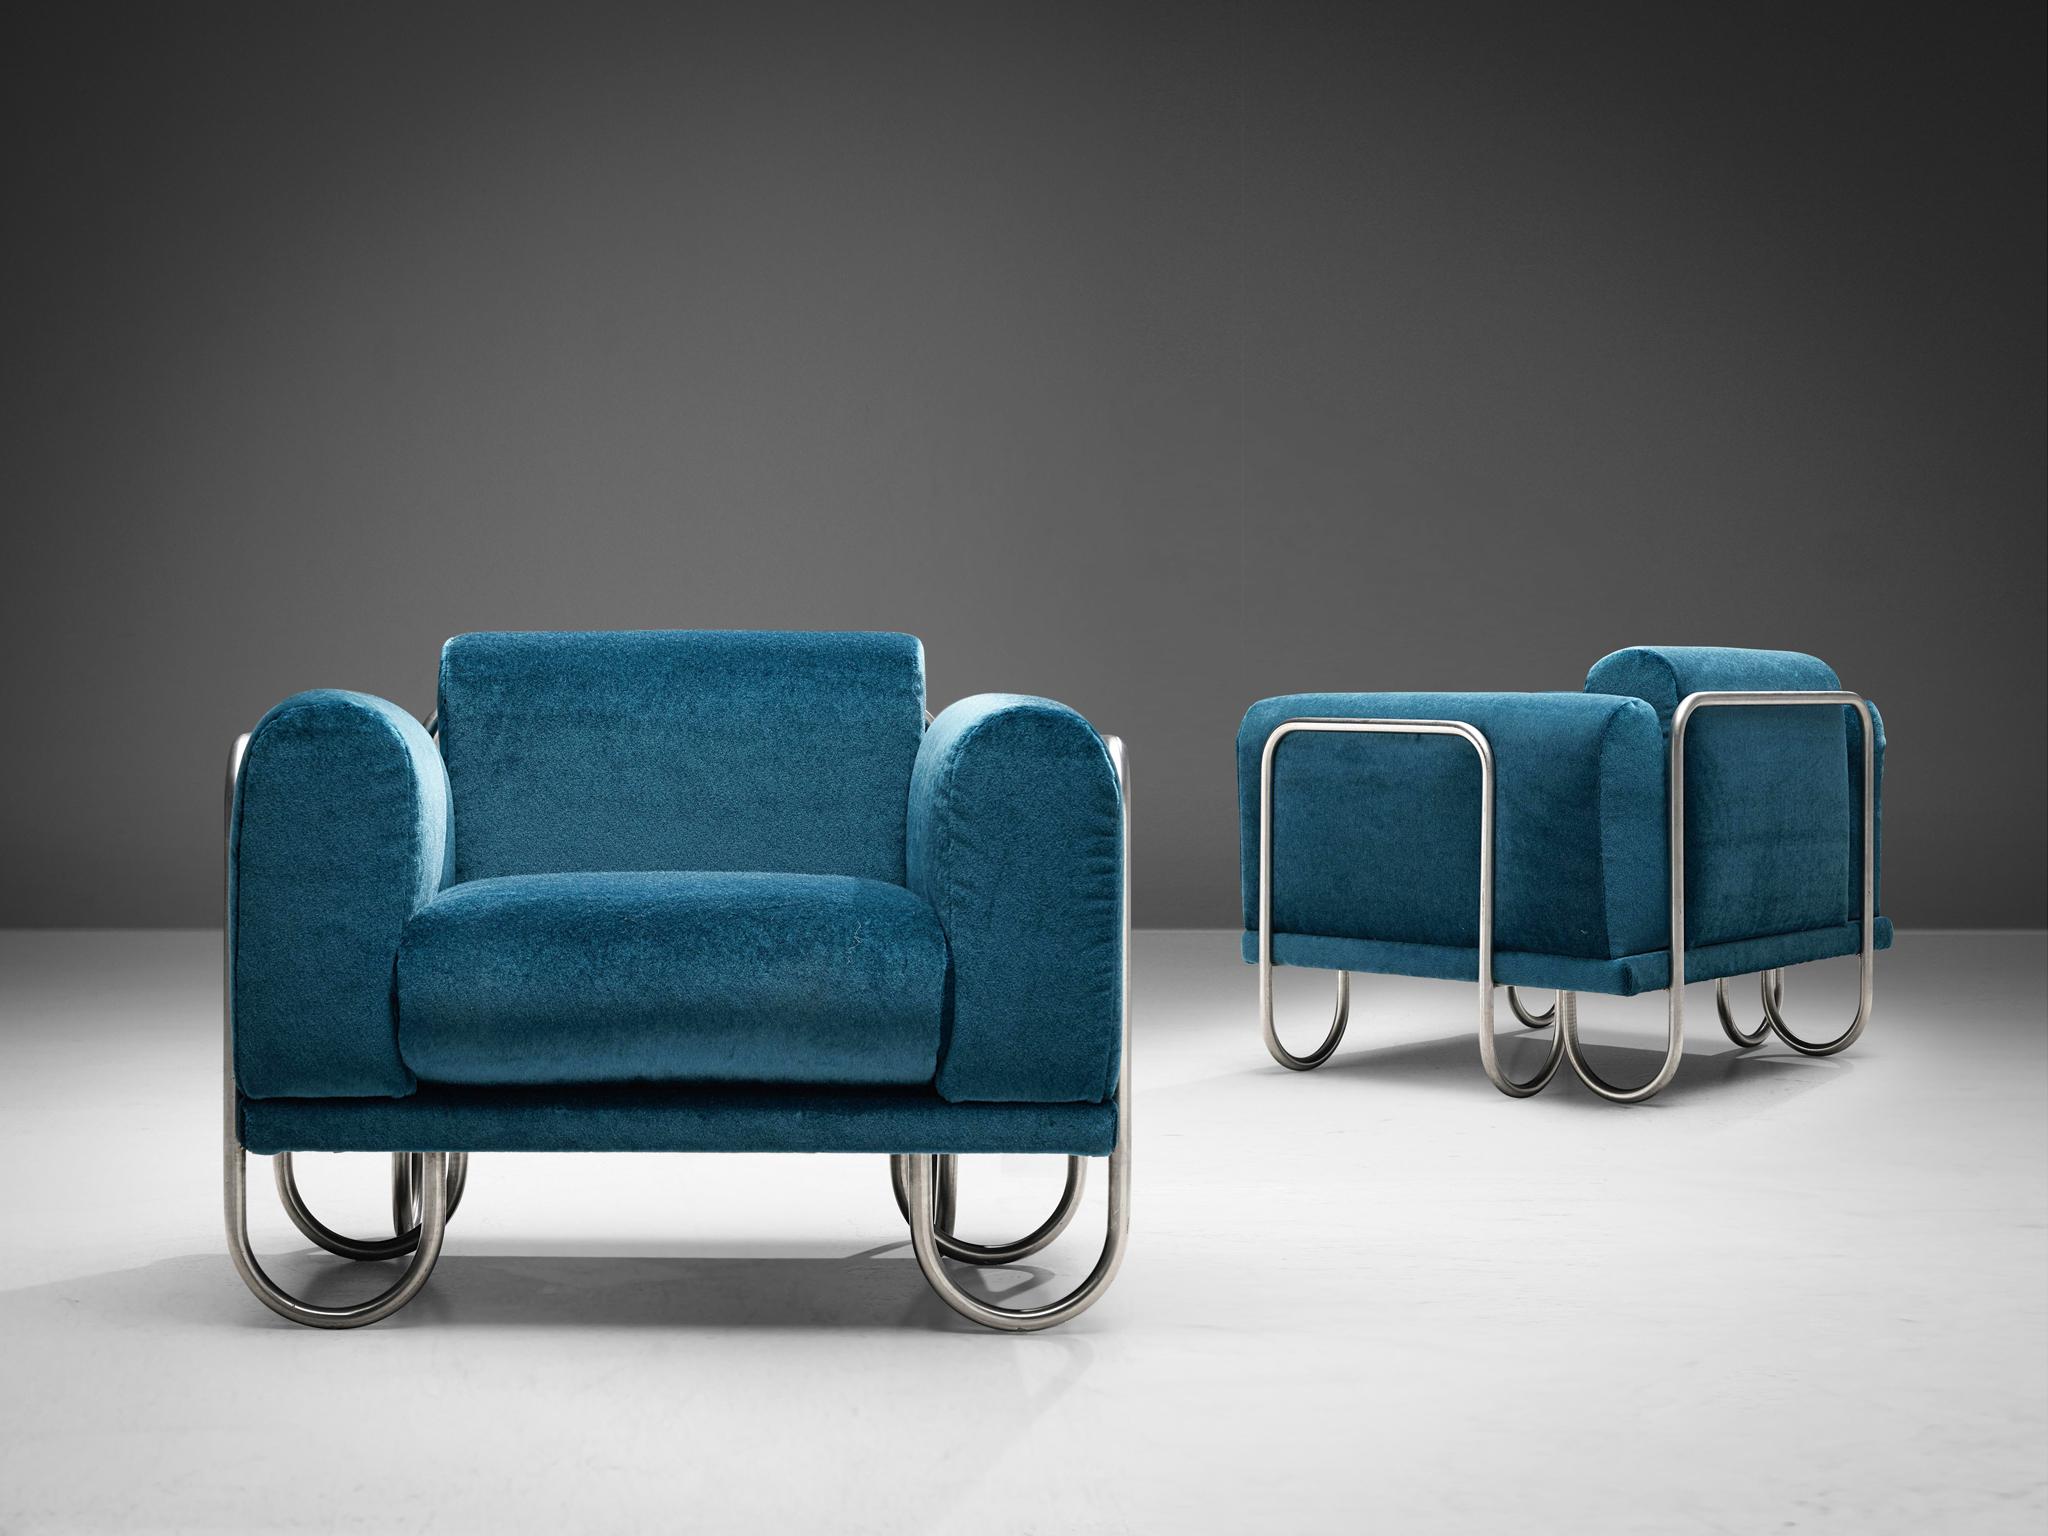 Byron Botker pour Lande, chaises longues, tissu bleu, acier chromé, États-Unis, années 1970

Un fauteuil confortable doté d'une structure tubulaire chromée incurvée. Le cadre semble être une ligne courbe continue, se déplaçant vers le haut pour